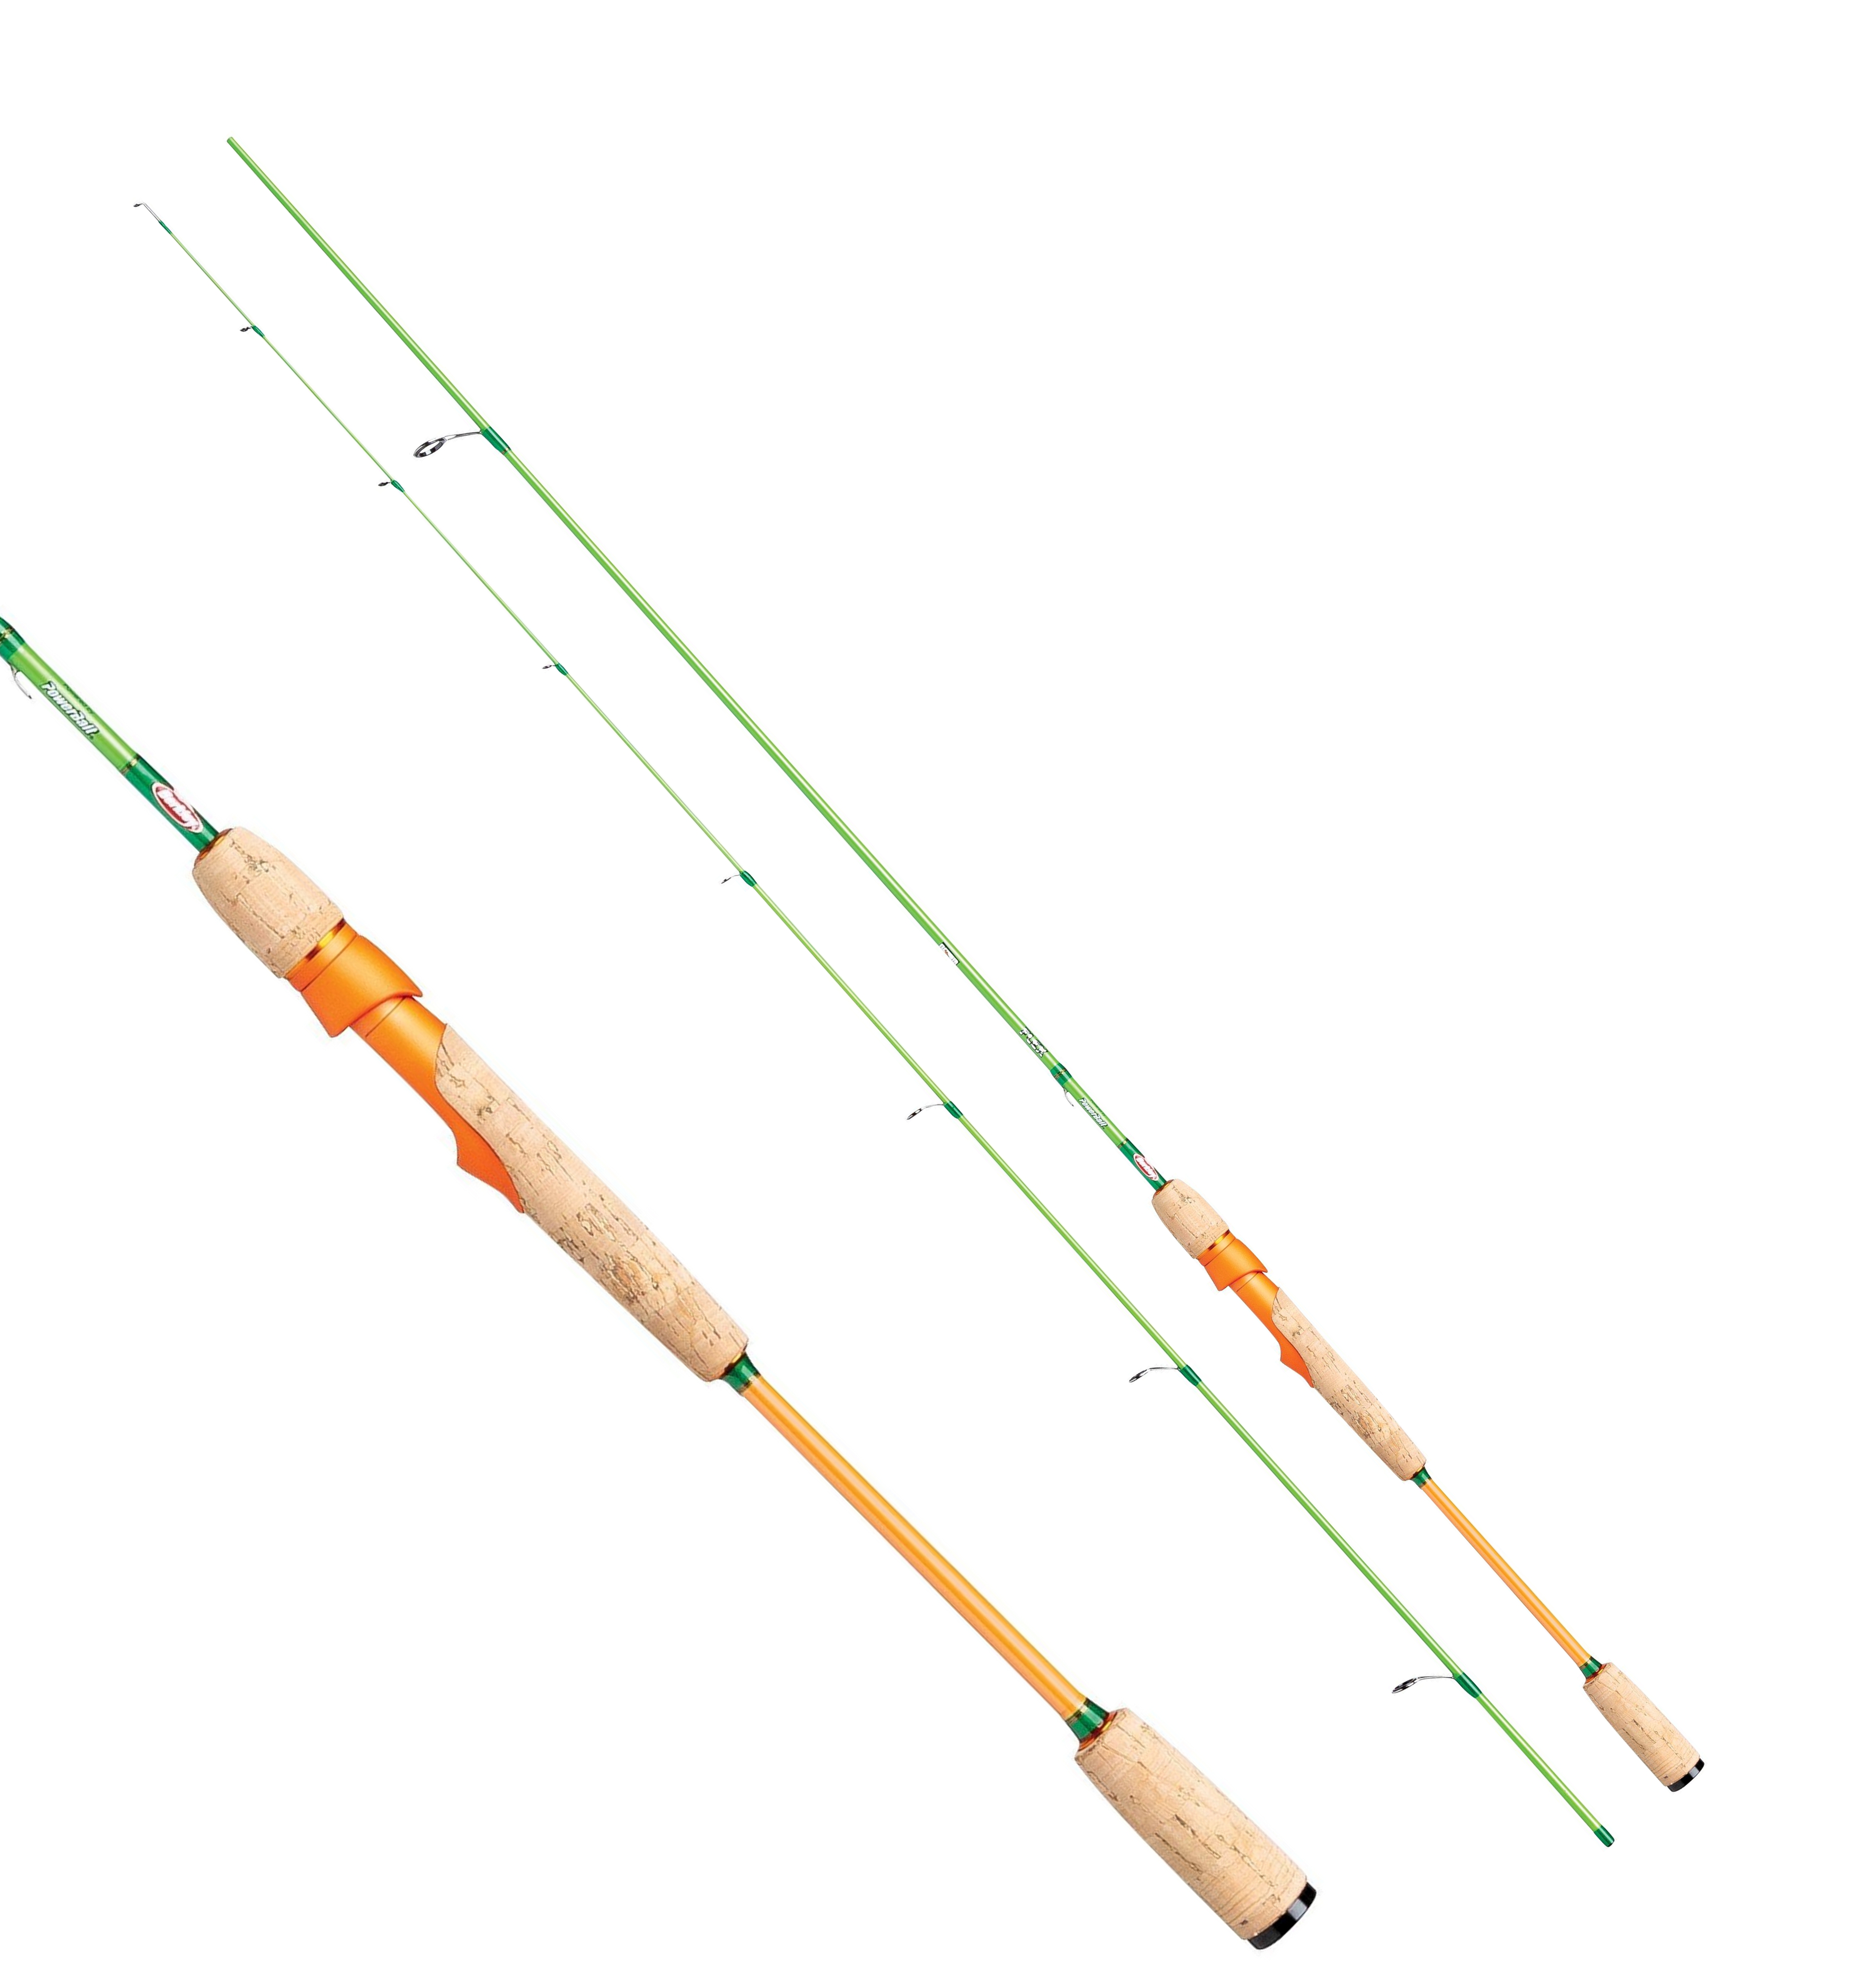 Berkley Flex Trout Tele Spinning Combo - Fishing Rod & Reel